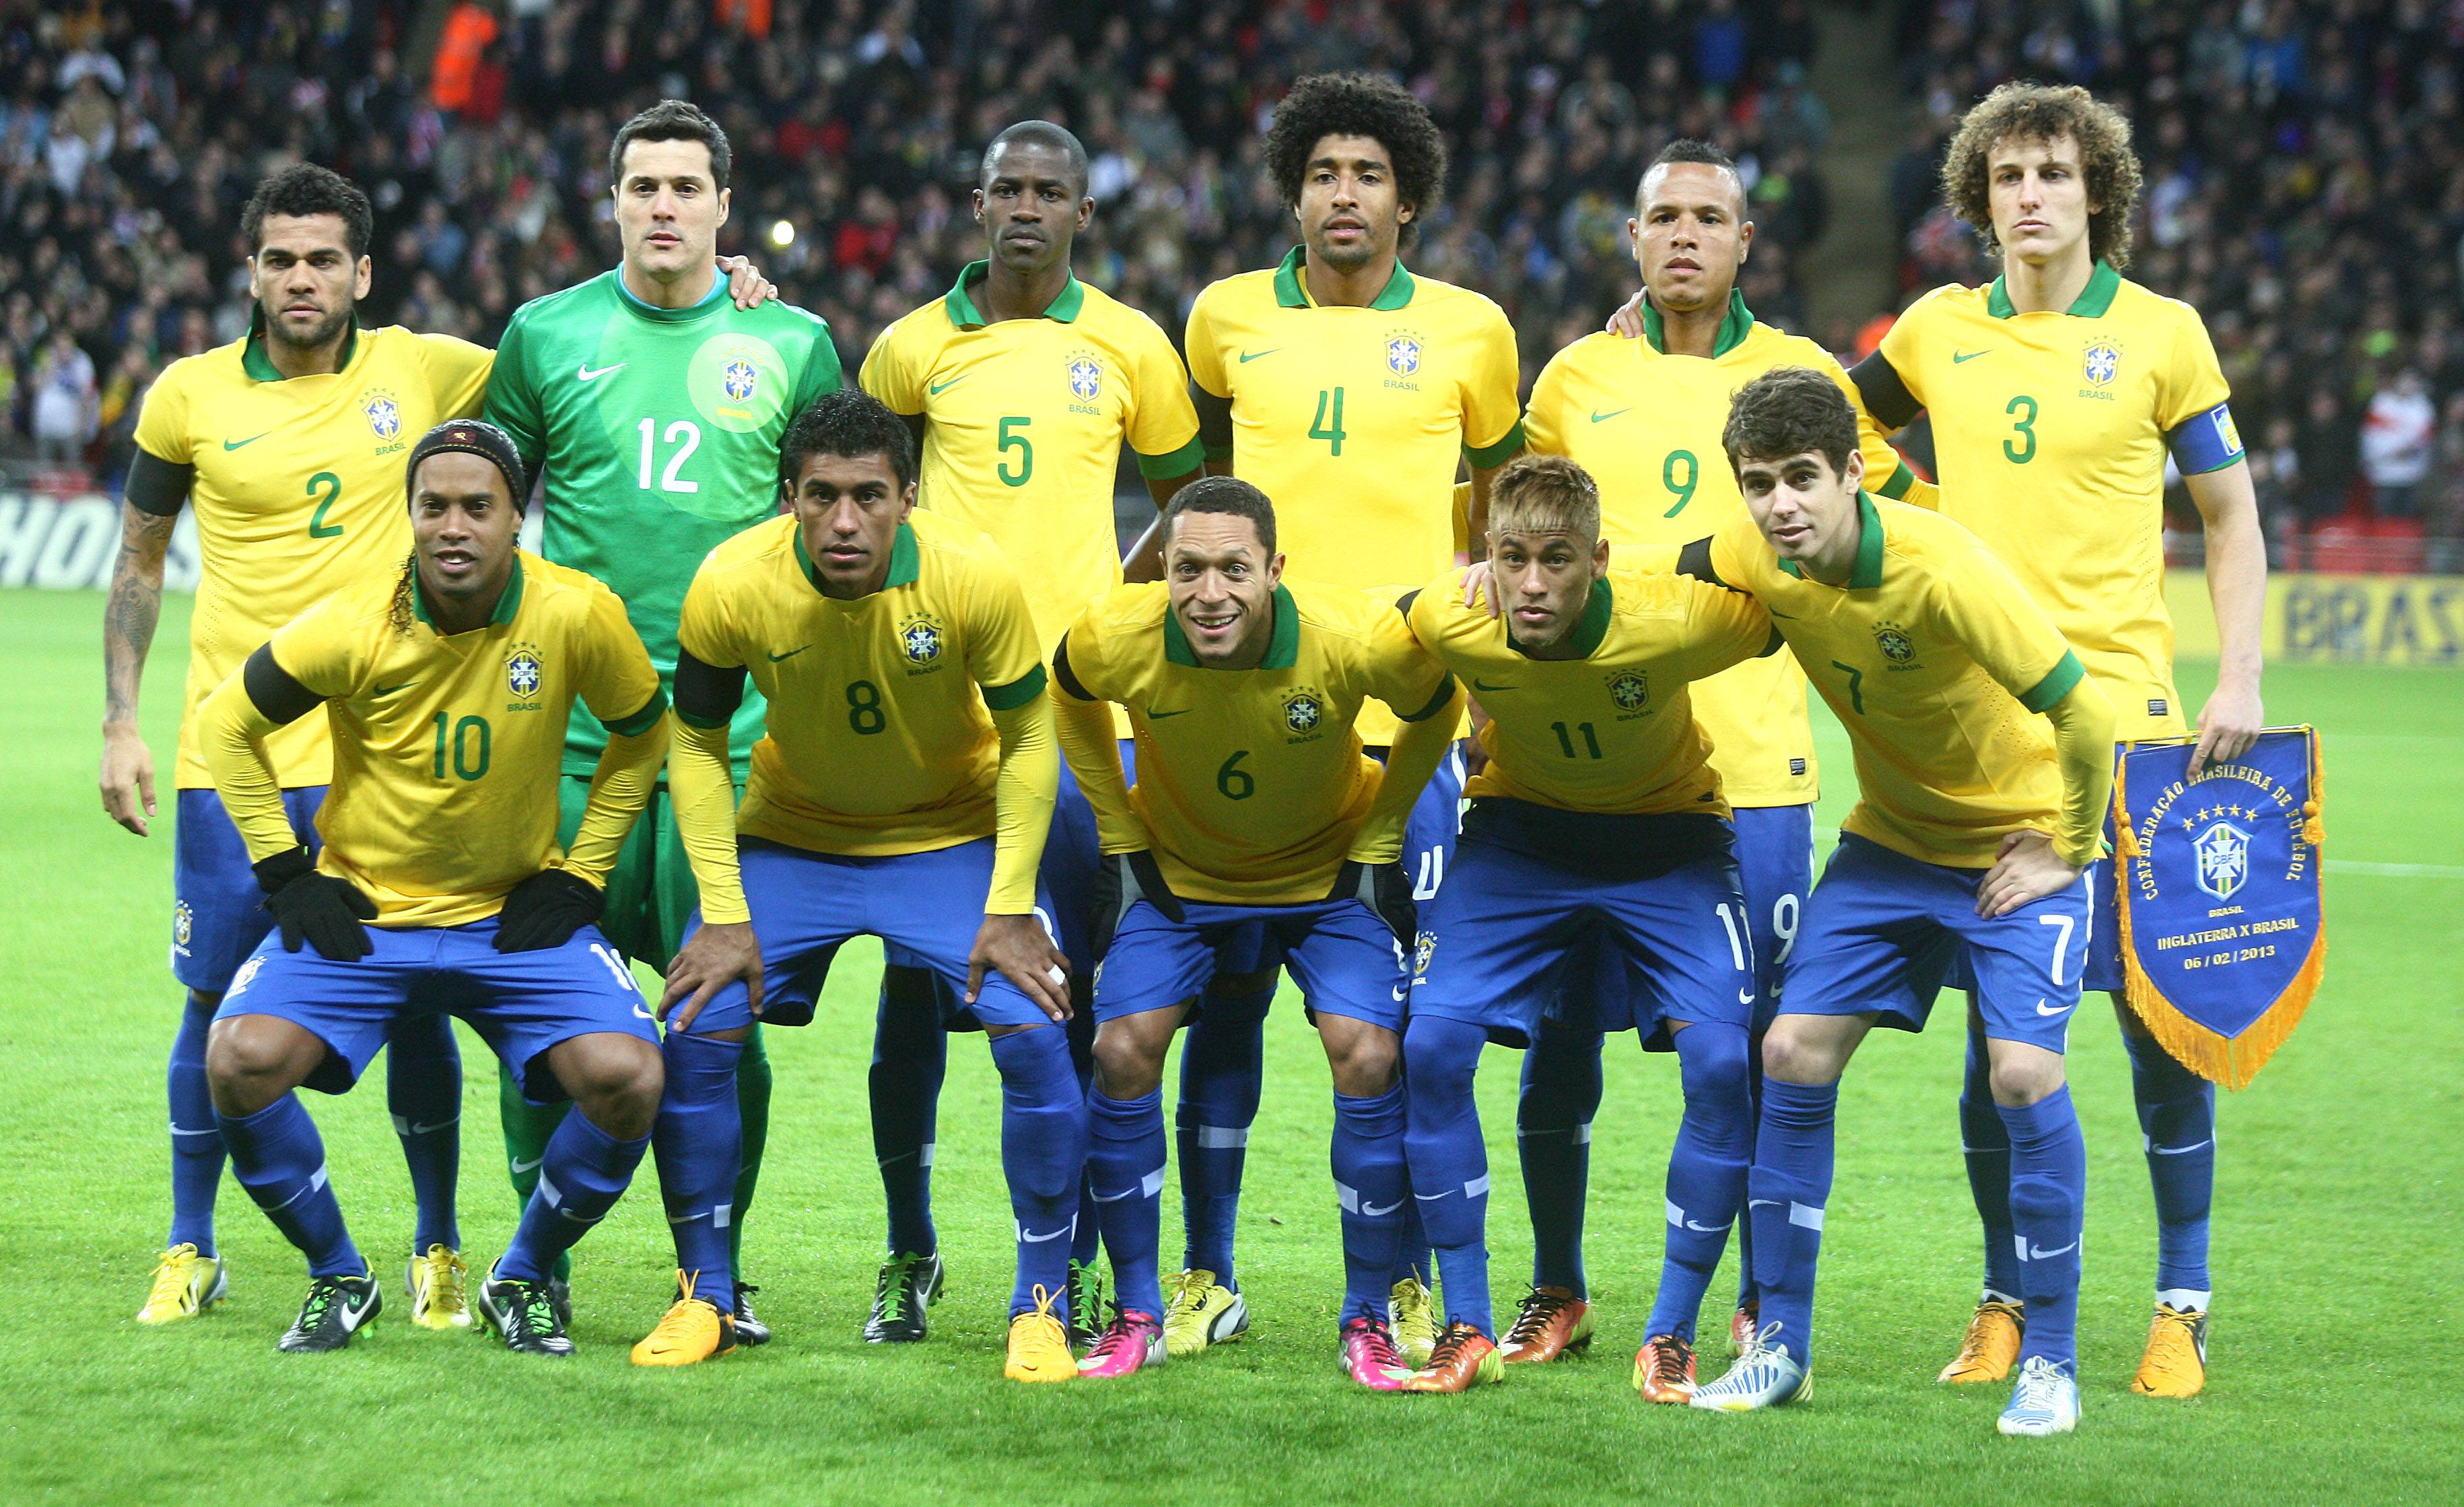 Brazil National Football Team Wallpaper 3660x2238 px Free Download. Team wallpaper, National football teams, Football brazil